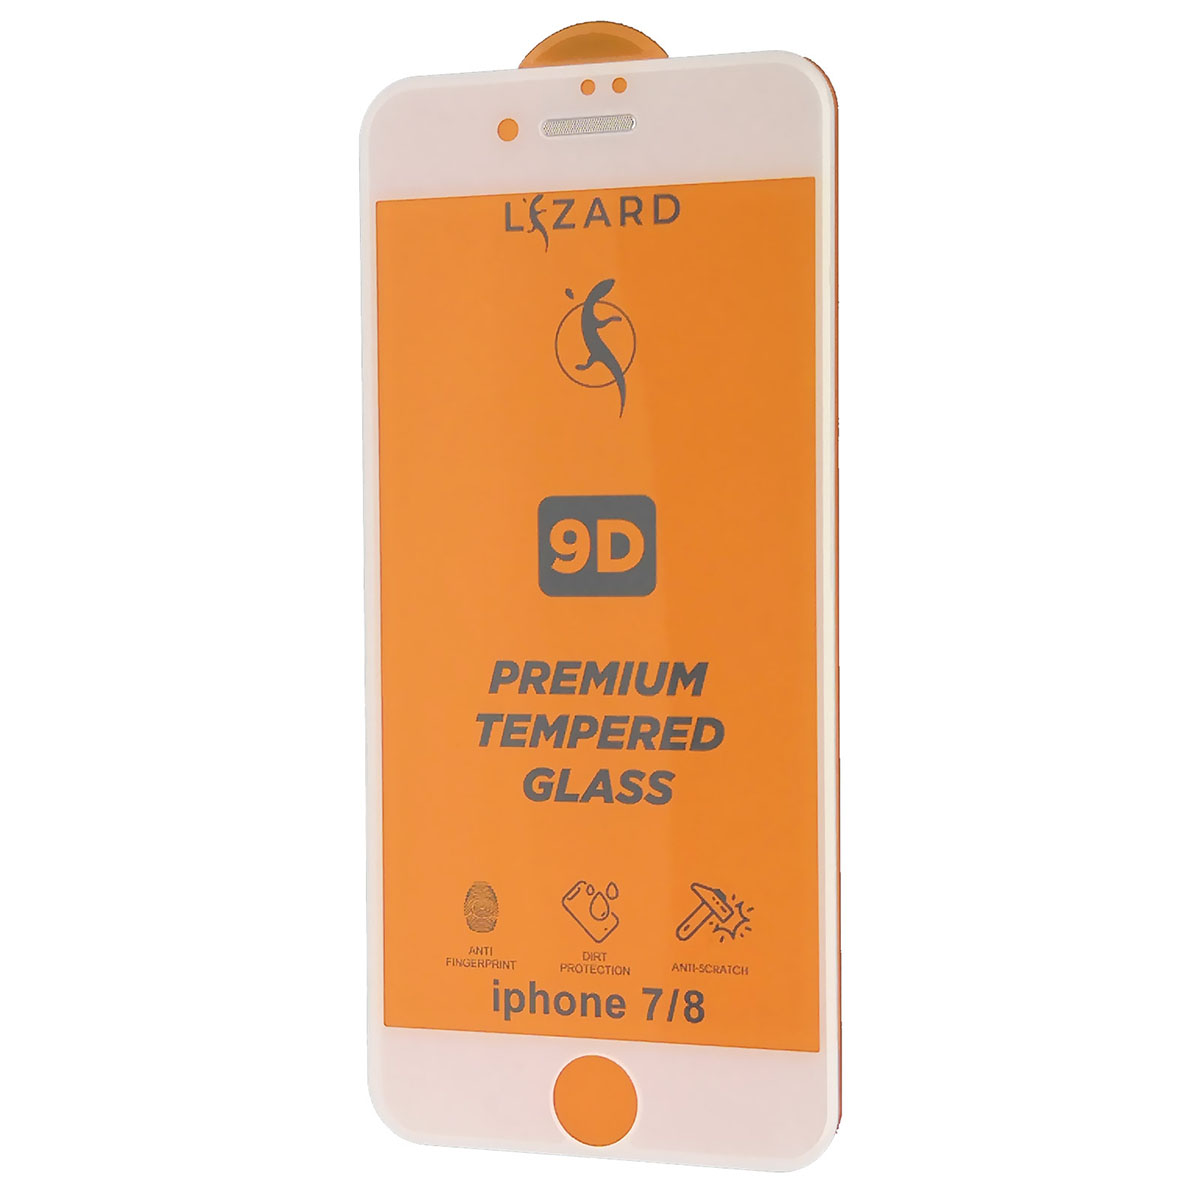 Защитное стекло 9D Lizard для APPLE iPhone 7, iPhone 8, с сеточкой на динамике, цвет белый.